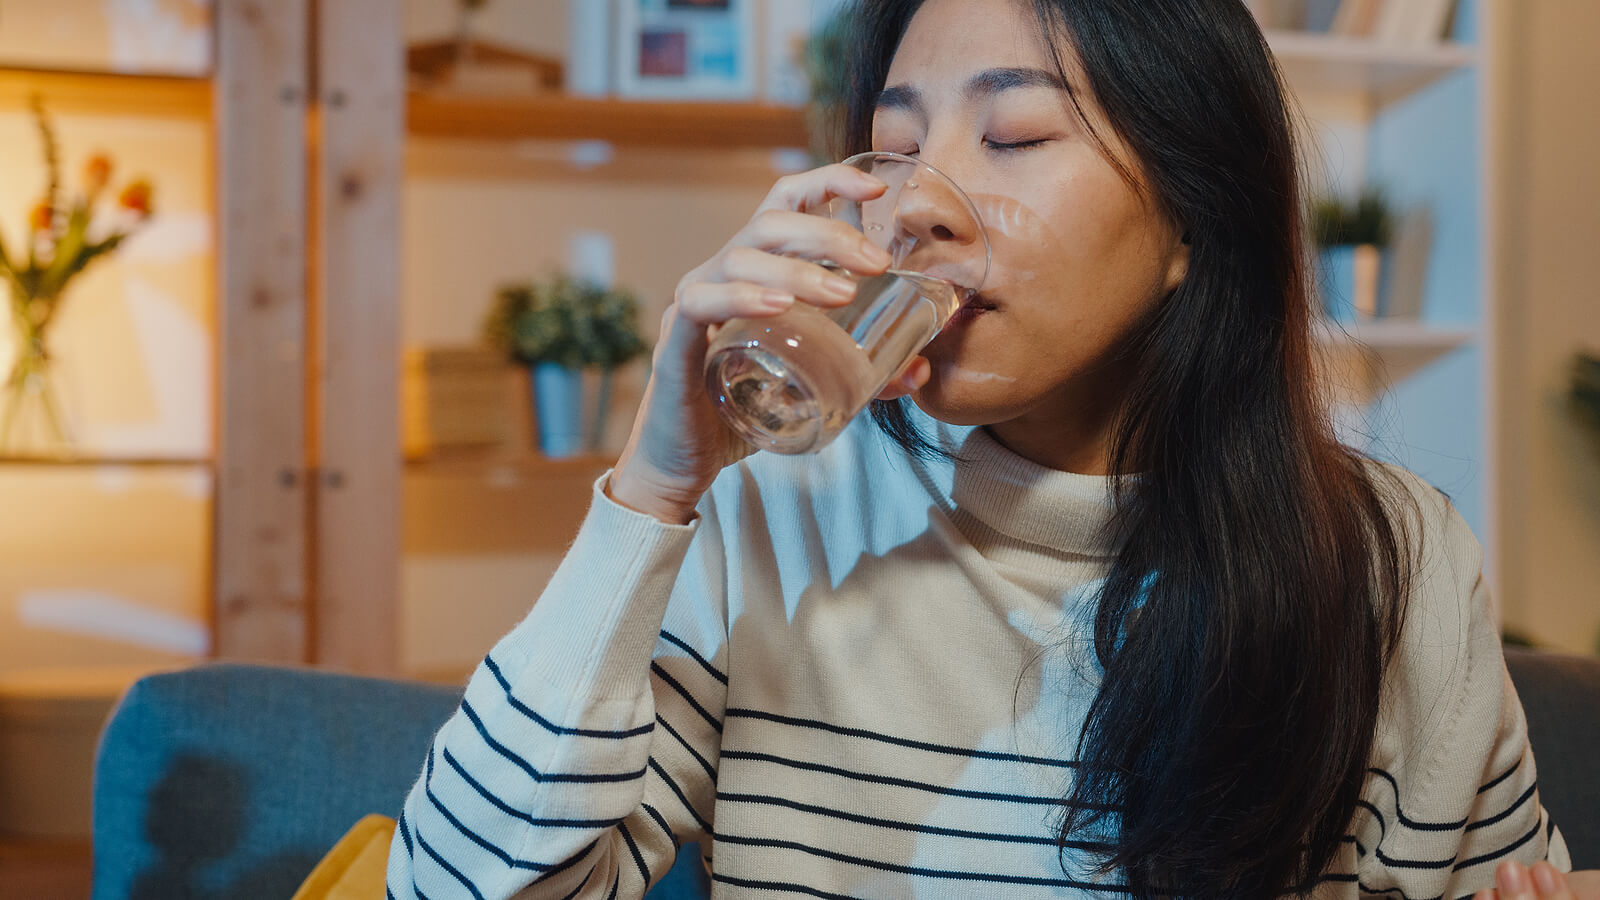 La diabetes y la boca seca suelen solucionarse temporalmente ingiriendo agua